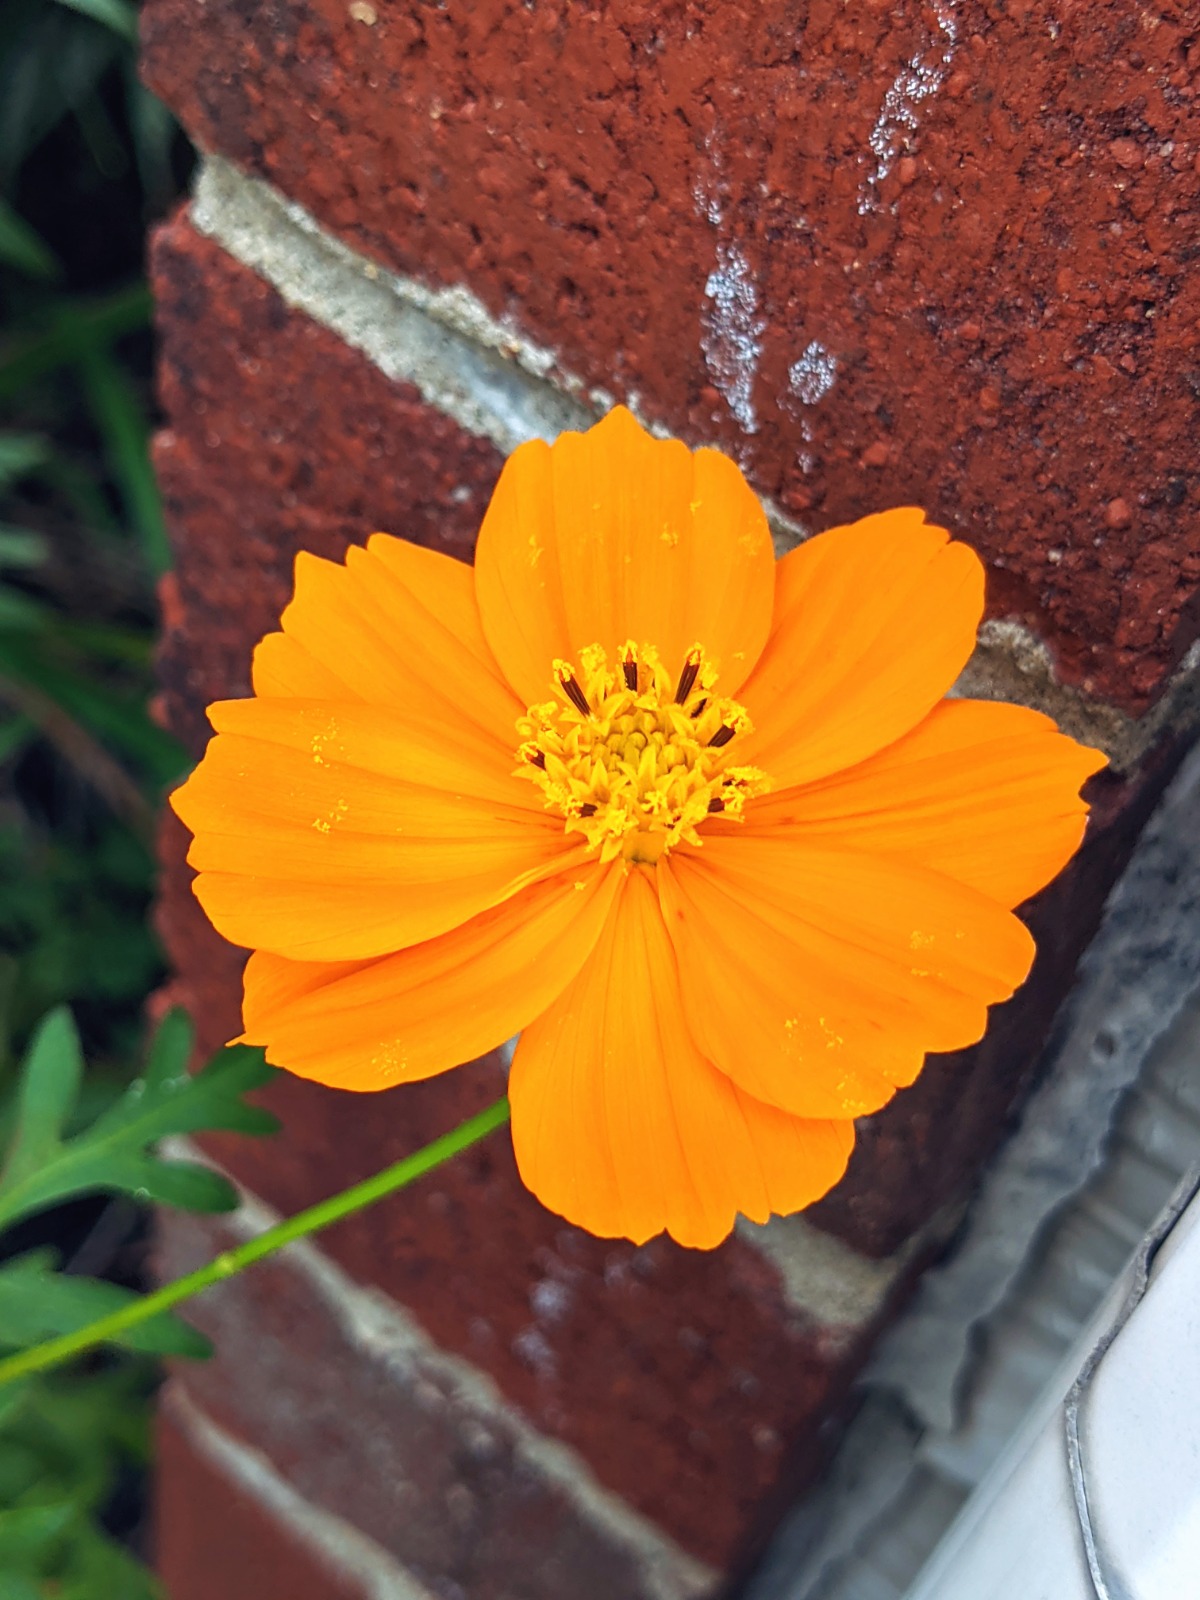 Cosmic Orange Cosmos Flower near a brick wall